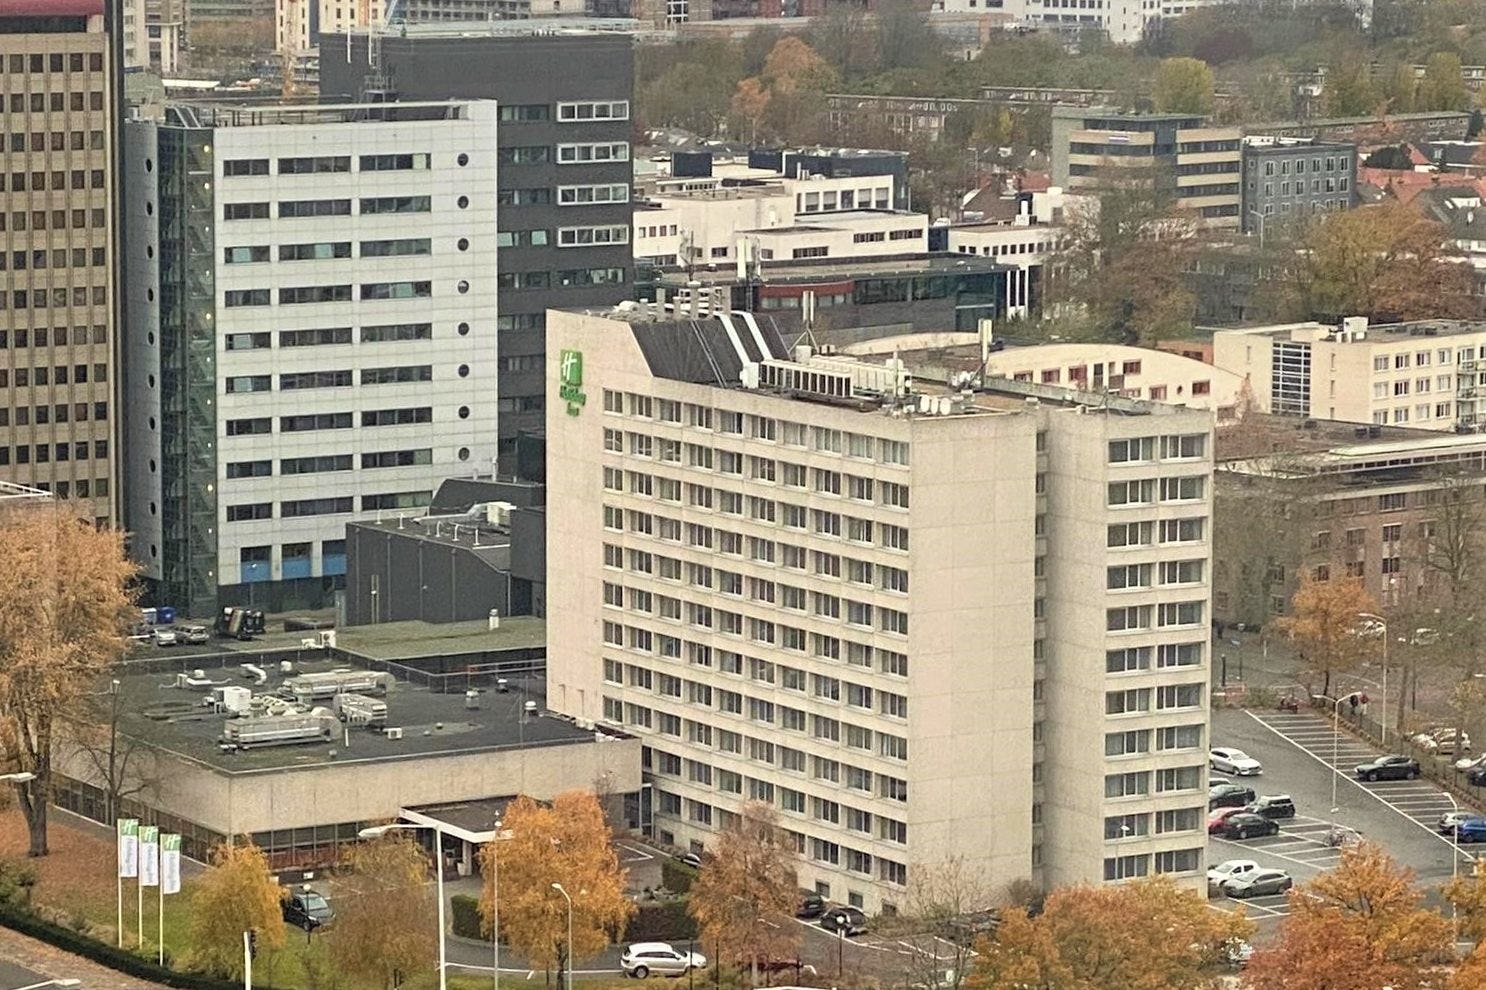 Somerset Capital Partners gaat circa 250 miljoen investeren in de herontwikkeling van de Holiday Inn locatie in het centrum van Eindhoven.